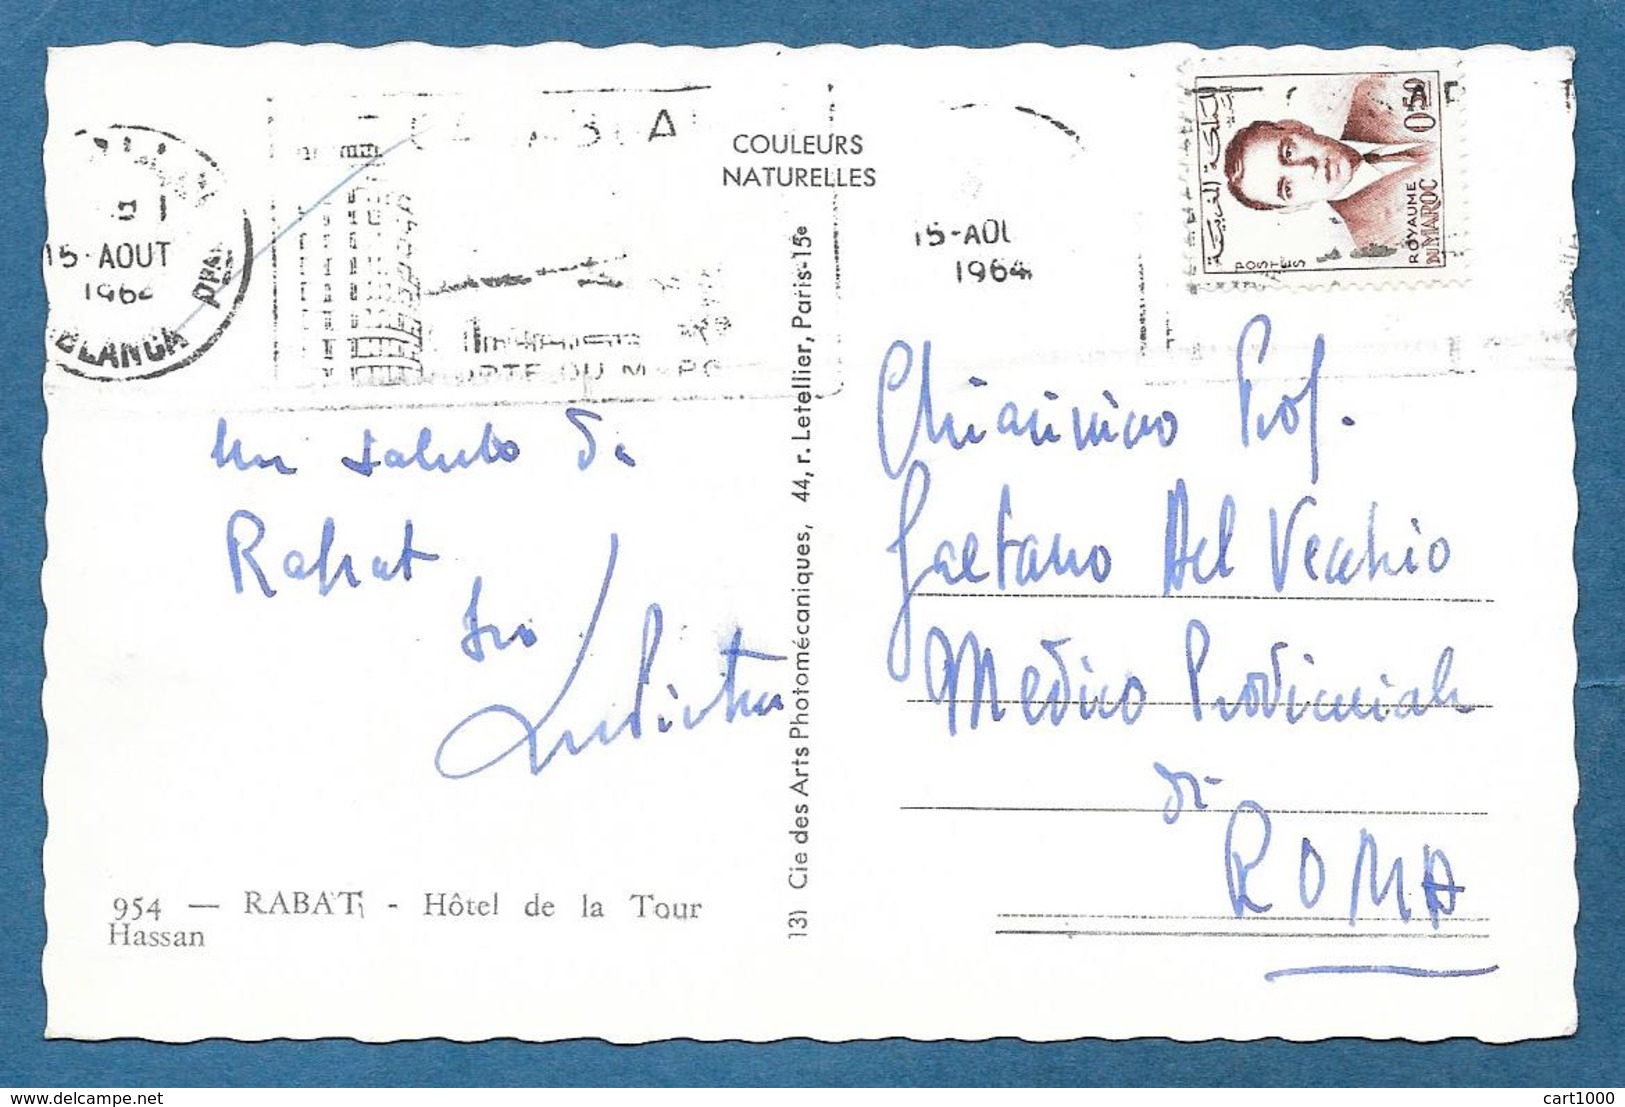 MAROC RABAT HOTEL DE LA TOUR HASSAN 1964 - Rabat